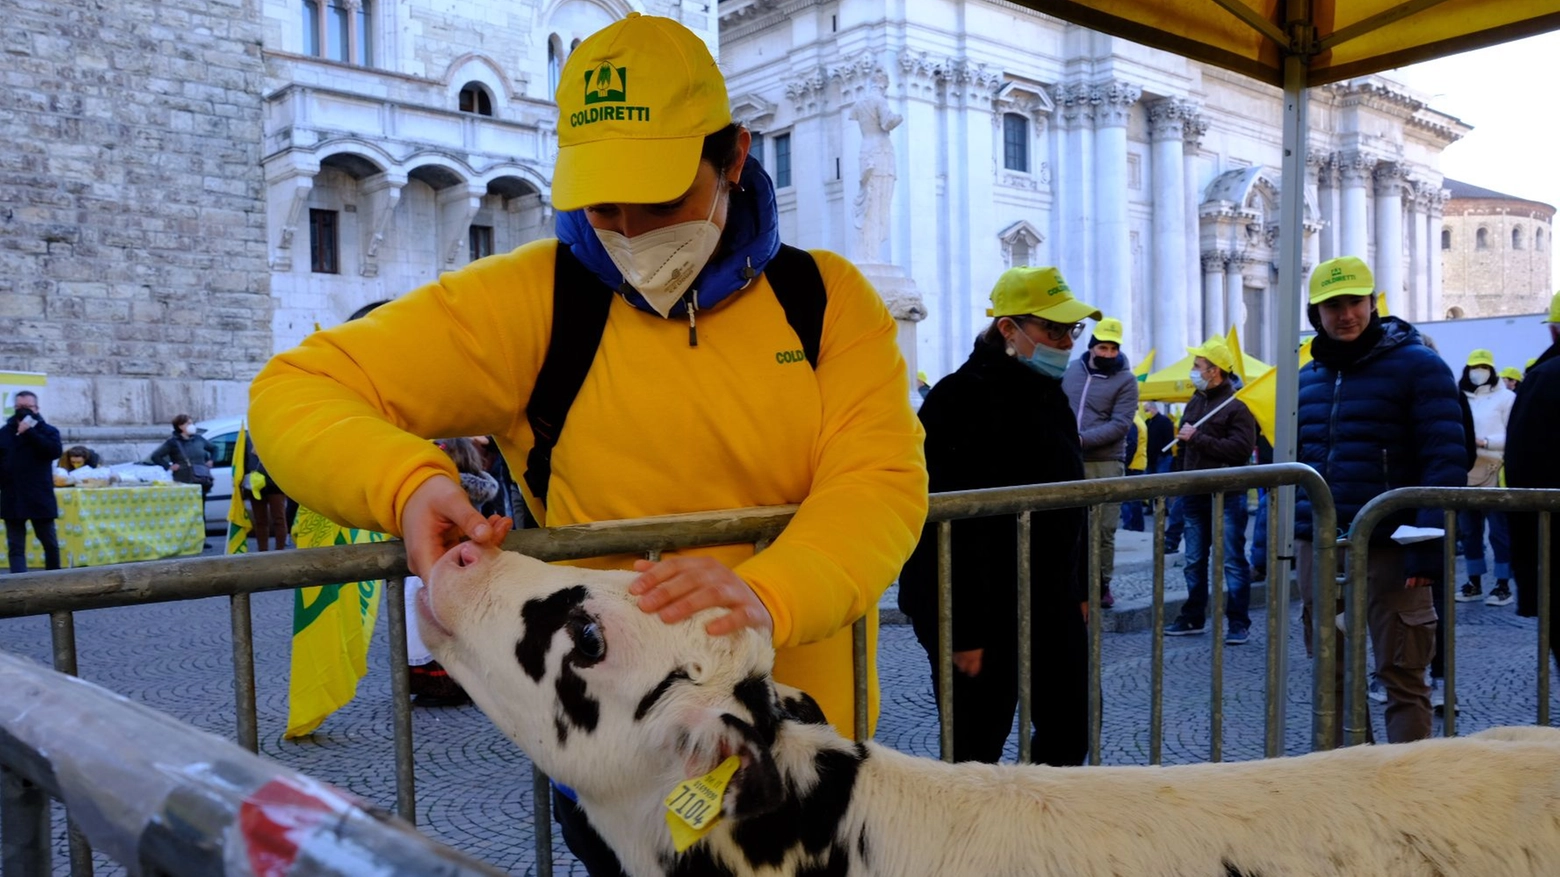 Piazza Duomo si colora di giallo, Coldiretti: "Il mancato riconoscimento dei prezzi adeguati costringe le imprese a lavorare in perdita"